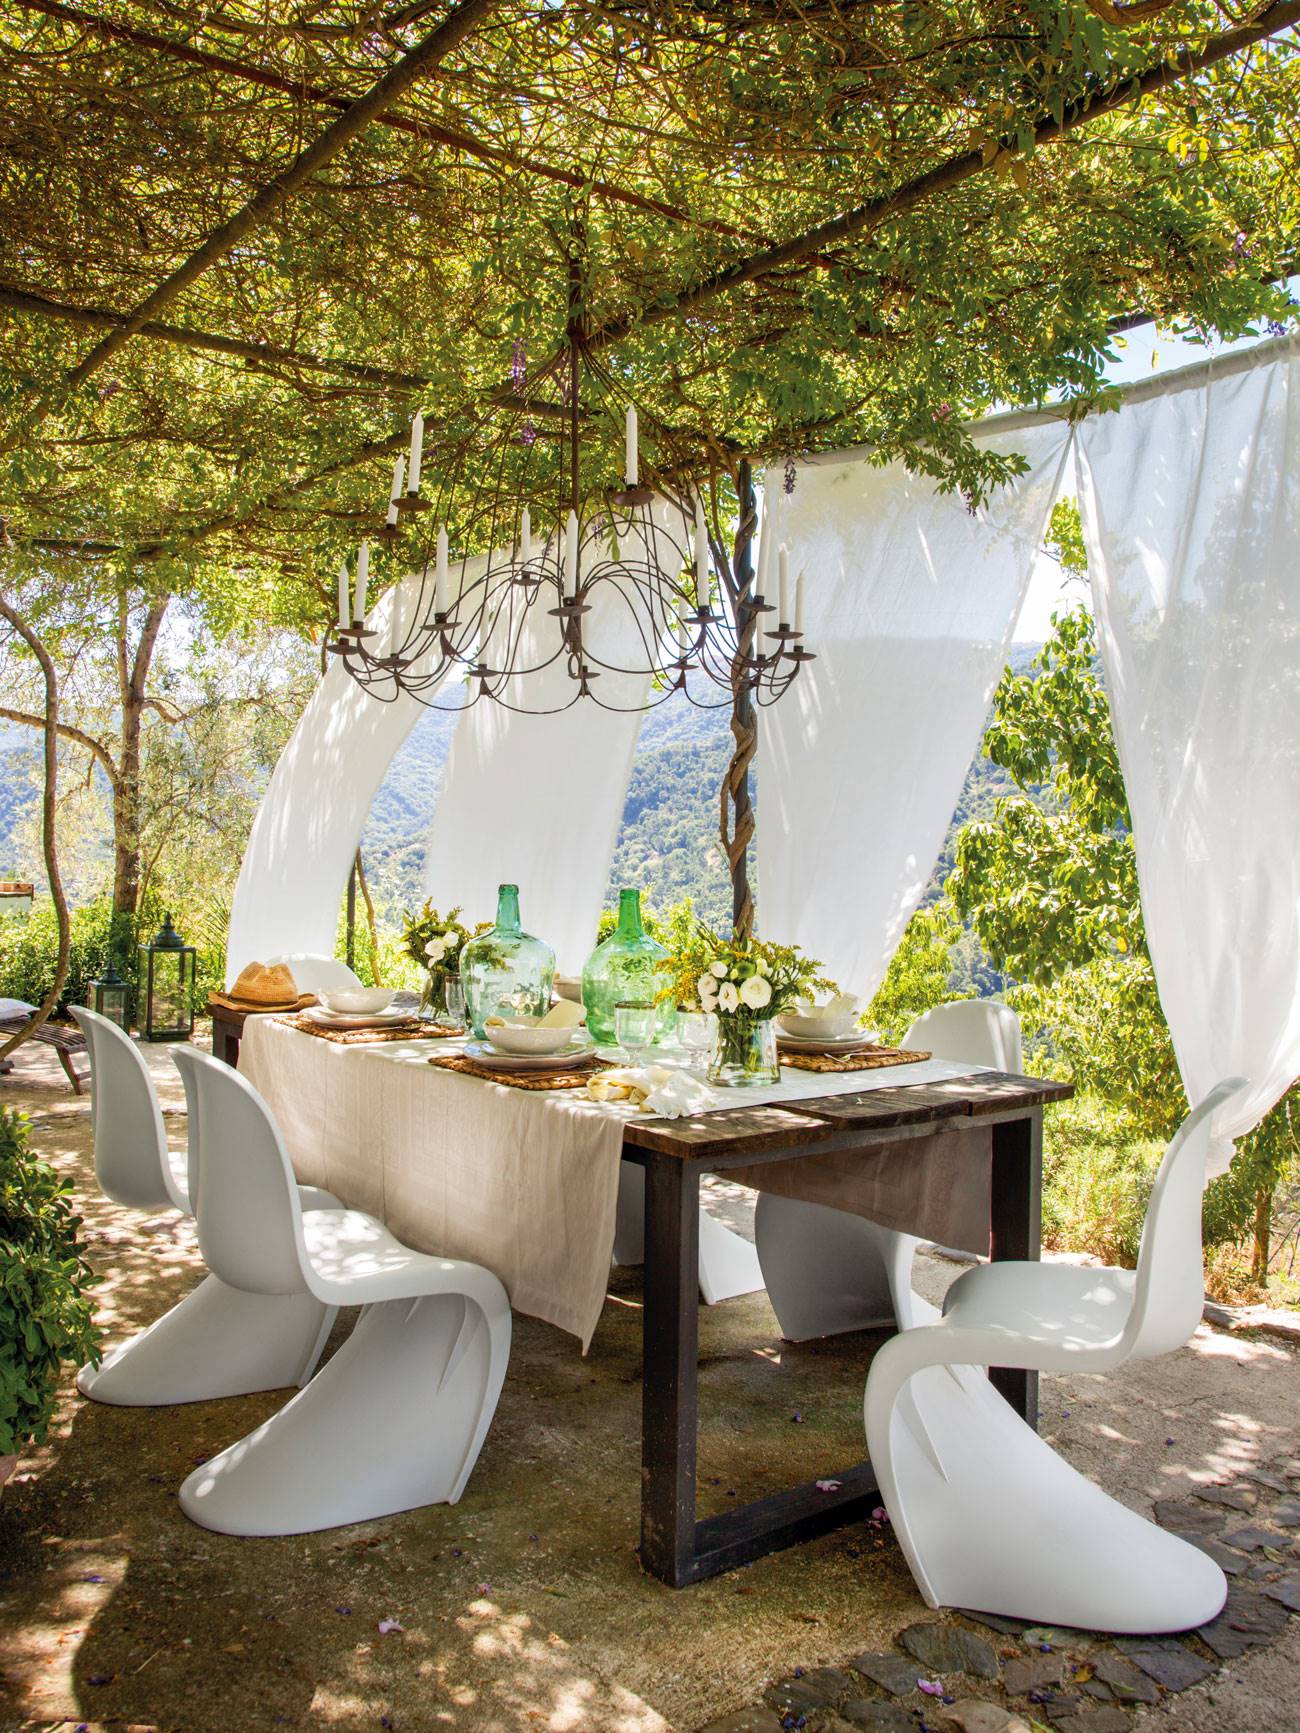 Comedor exterior con aire romántico y con sillas modelo Panton. 